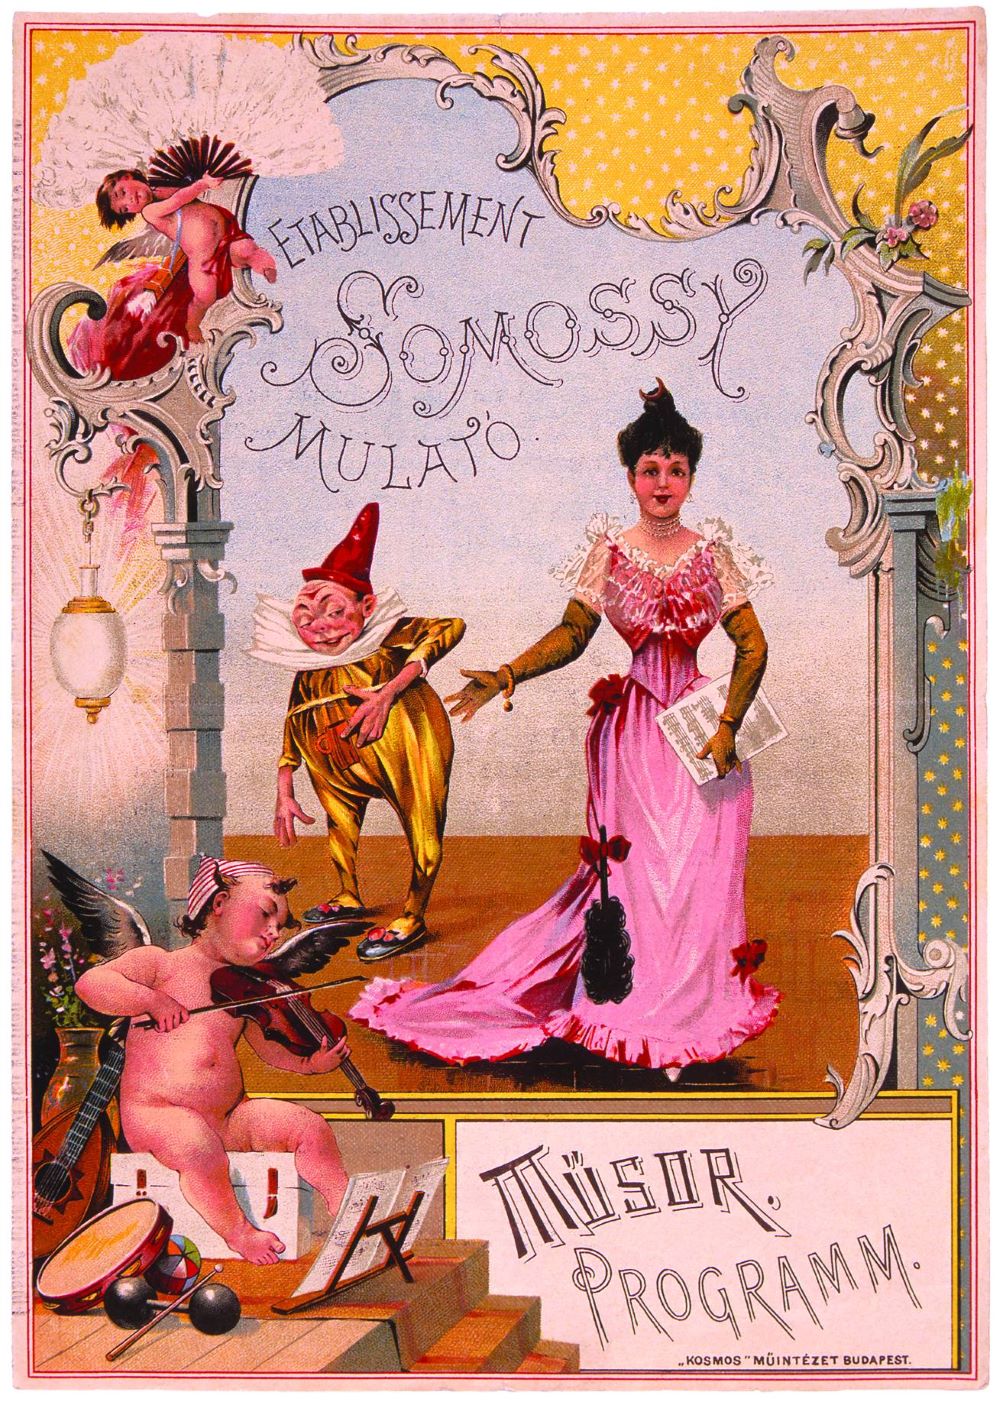 A Somossy Mulató műsorlapjának borítója, 1894. Sávely színezett litográfiája